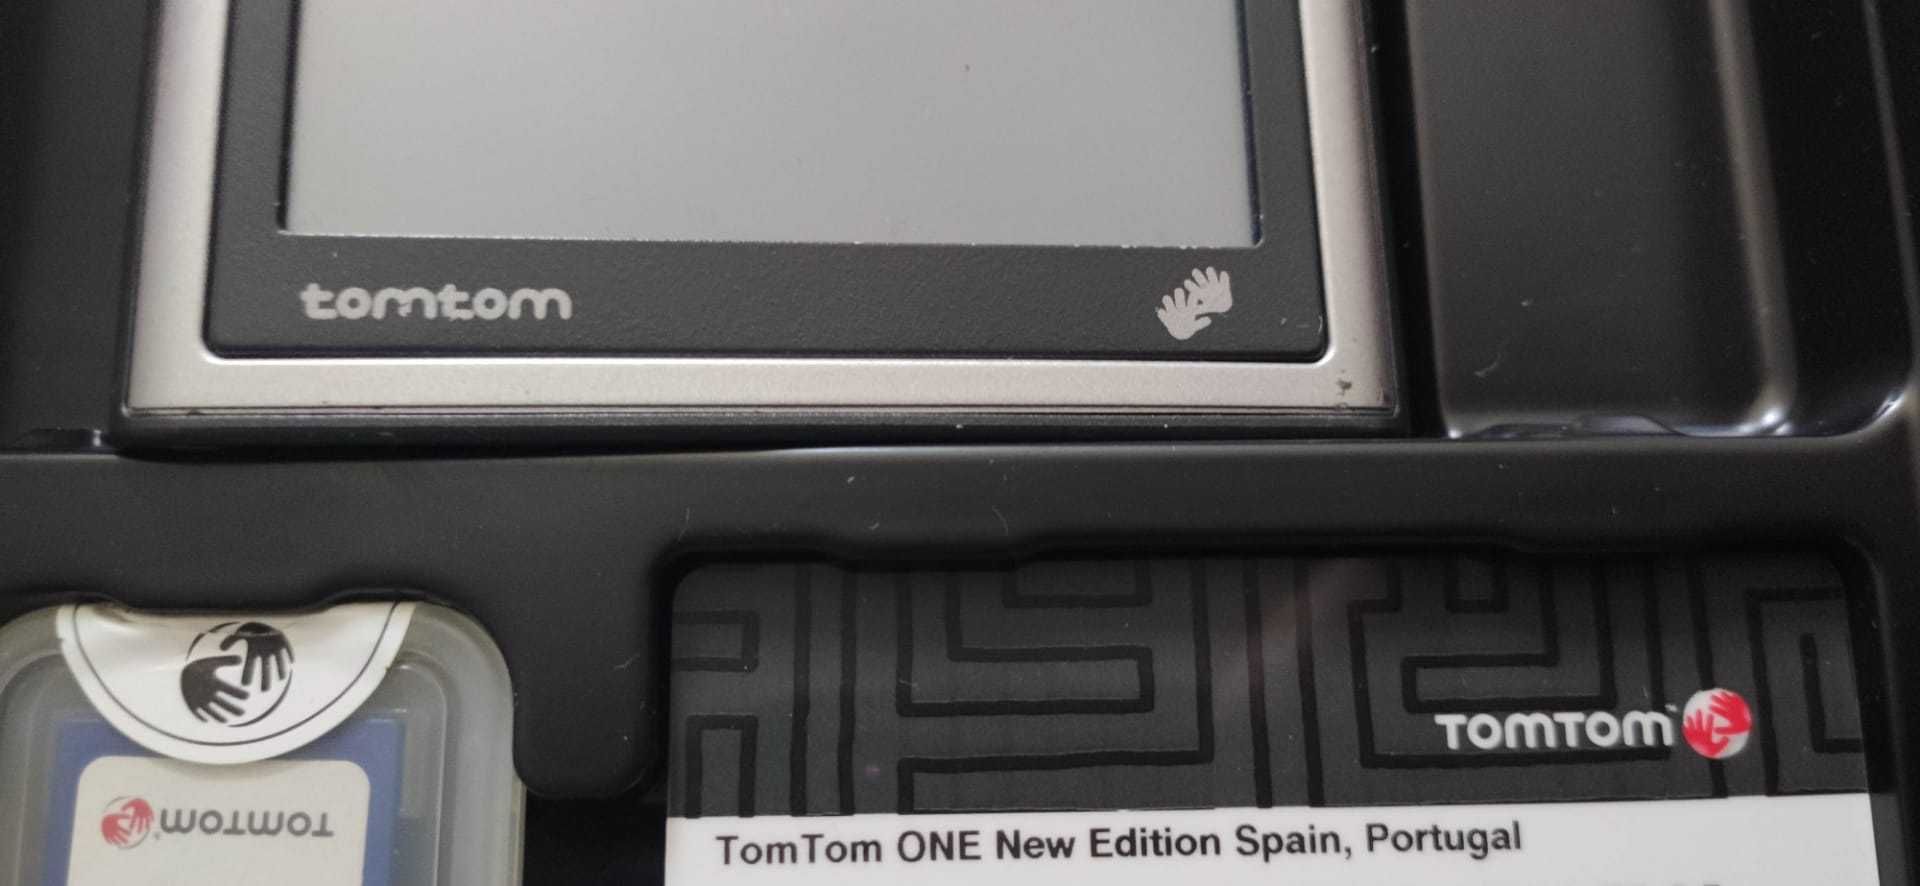 Tomtom GPS - novo! Com mapas de portugal e espanha gratis!